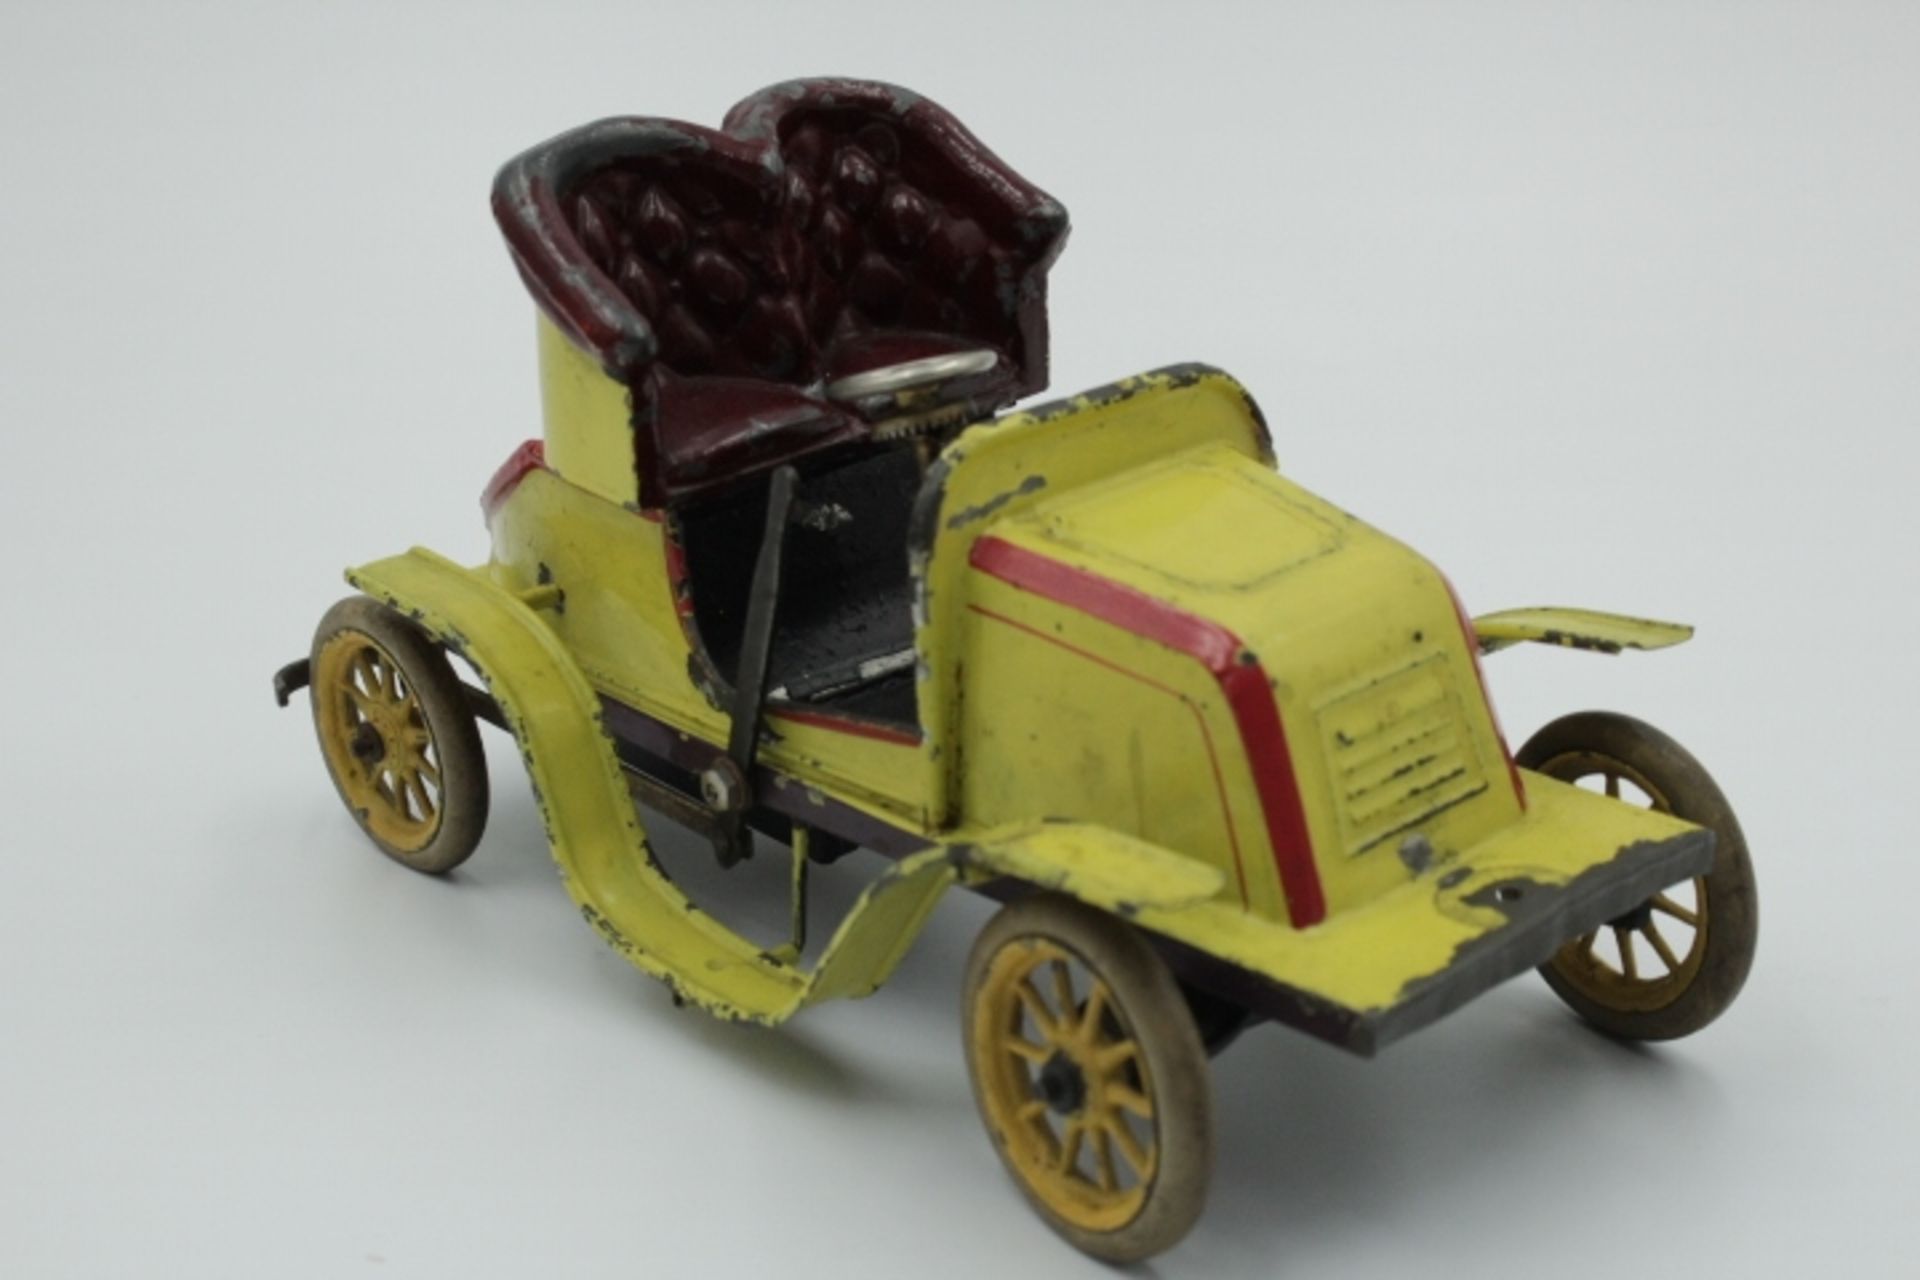 Bing Uralt Auto Blech Farbig gefasst wohl um 1910 Federwerk nicht geprüft,Gummibereifung bespielter - Bild 2 aus 3